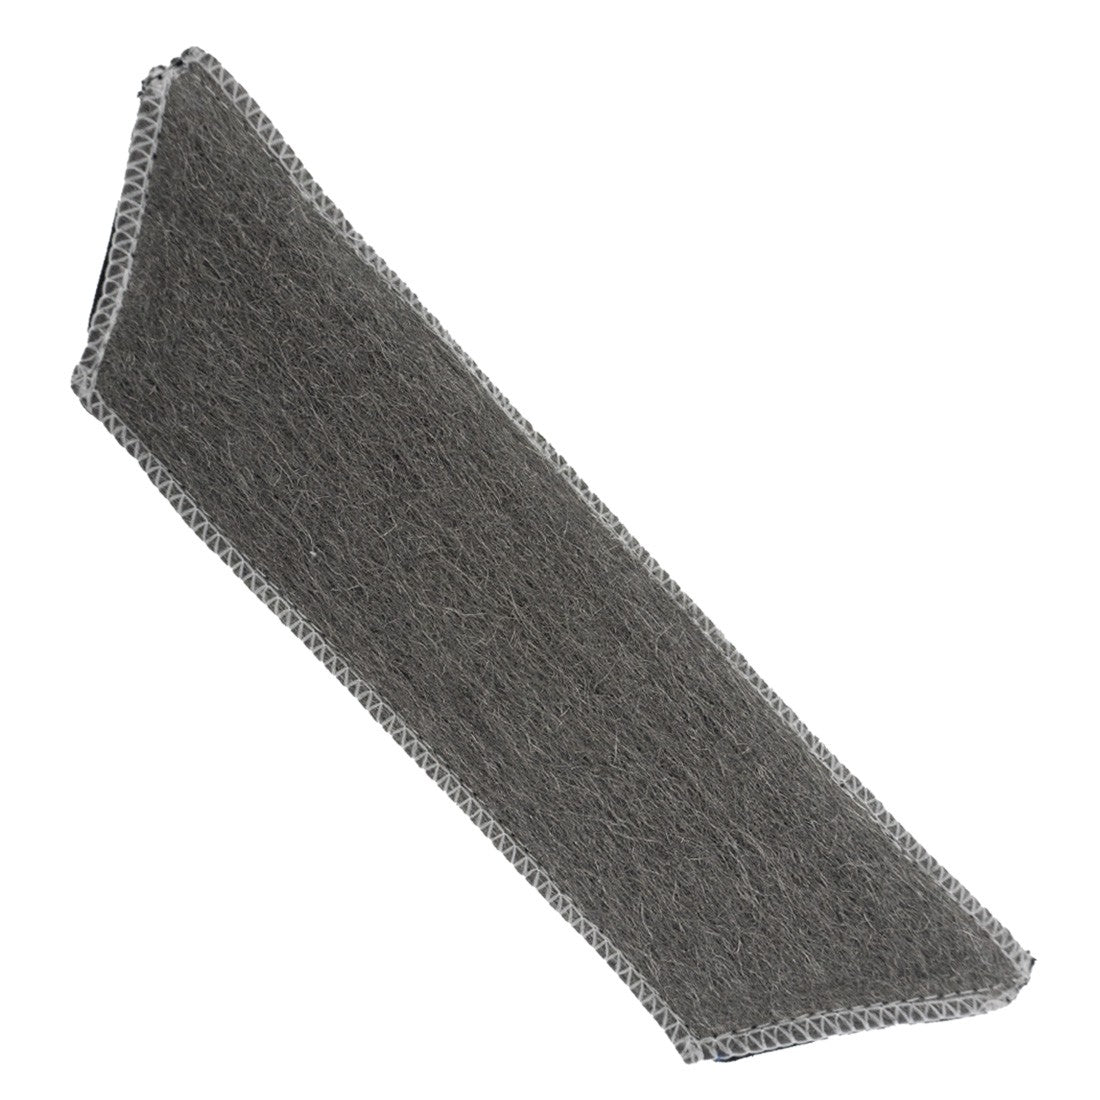 Moerman GeKKo Pad Steel Wool - 14 Inch Aerial Left Angle View